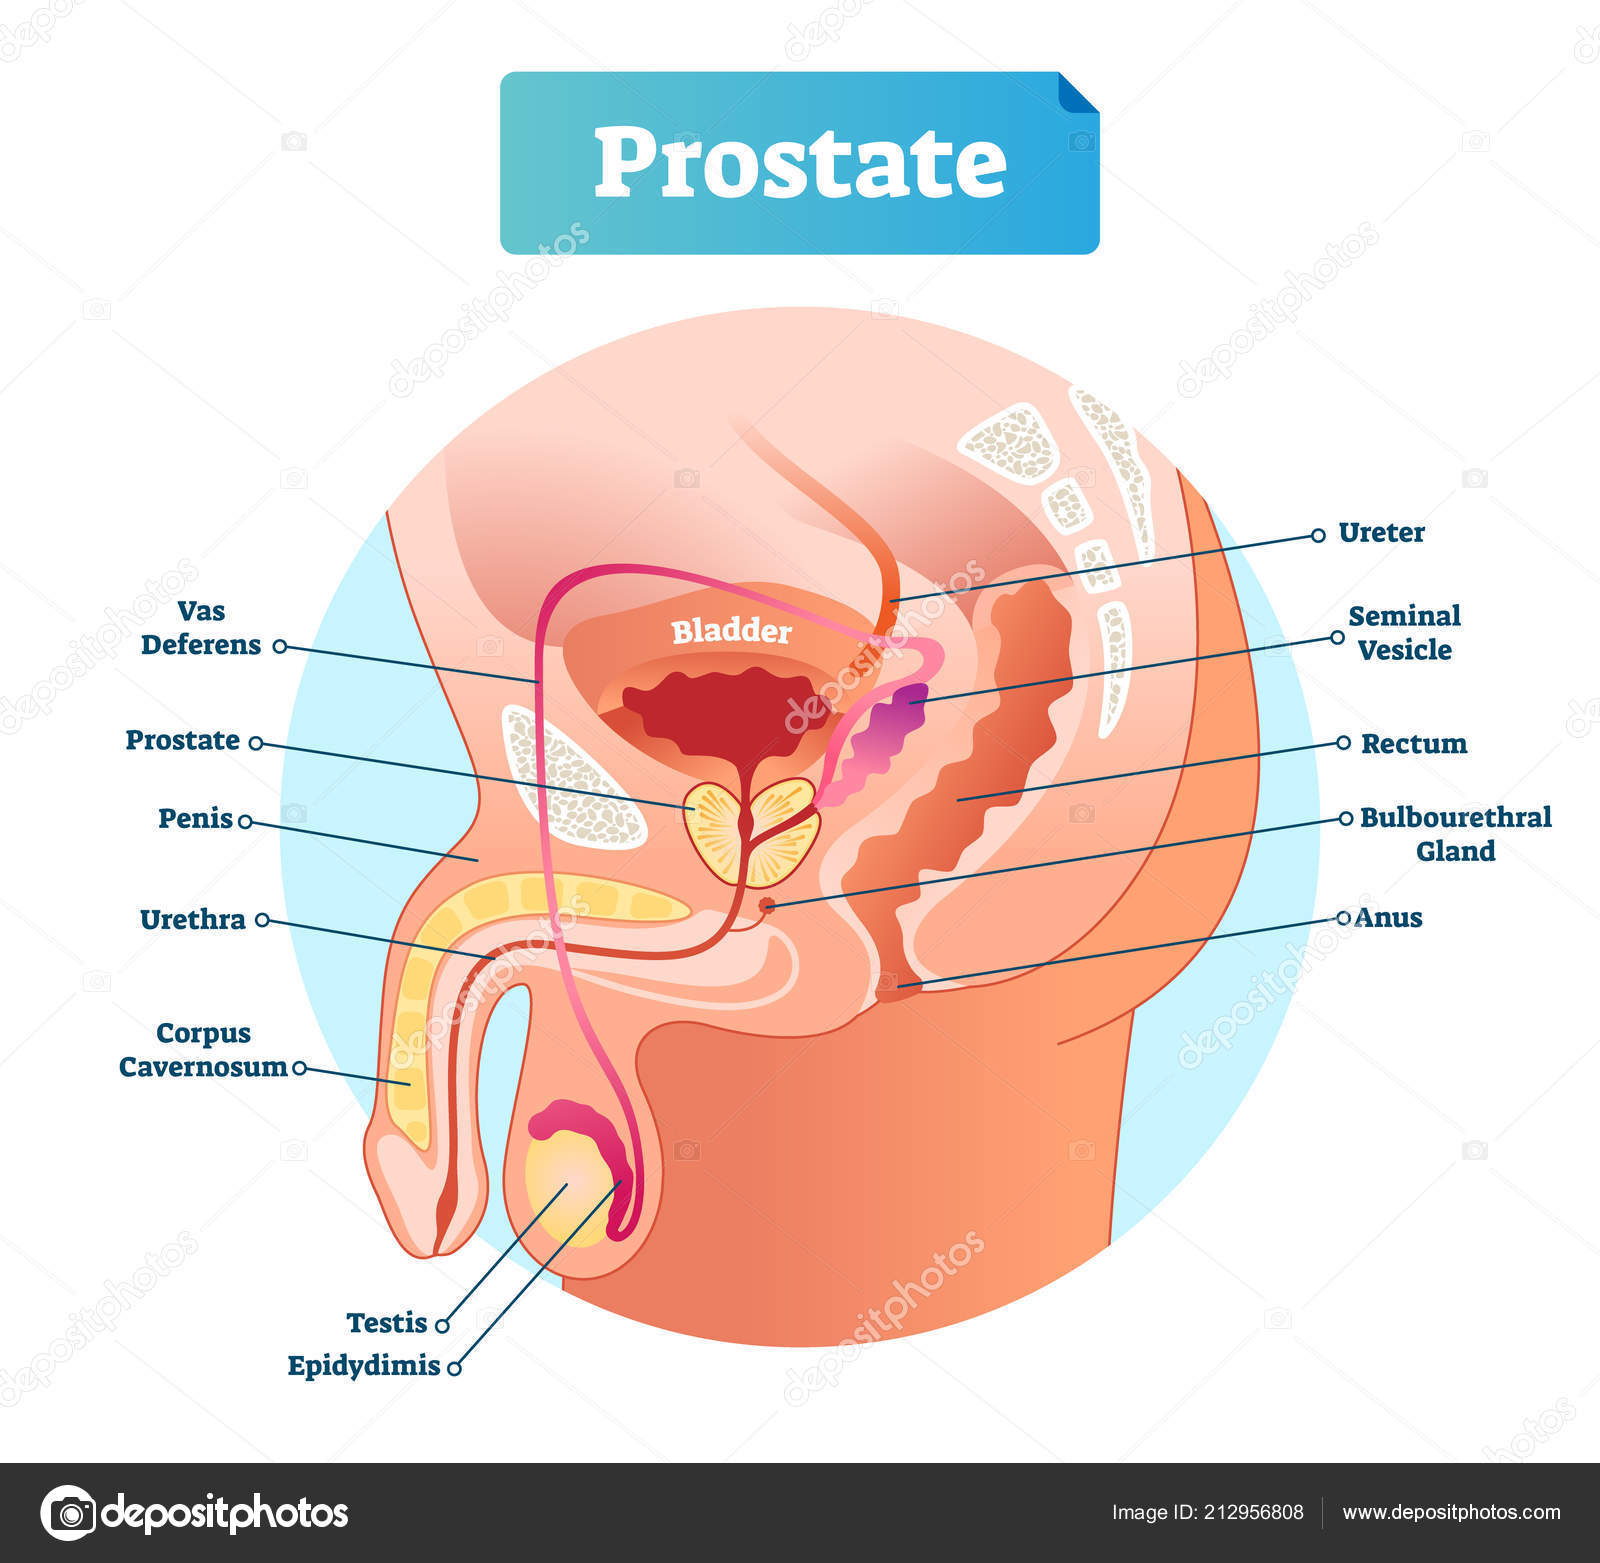 Mi a prostatitis ahogy úgy néz ki. Hogyan néz ki a férfi prosztatagyulladás?